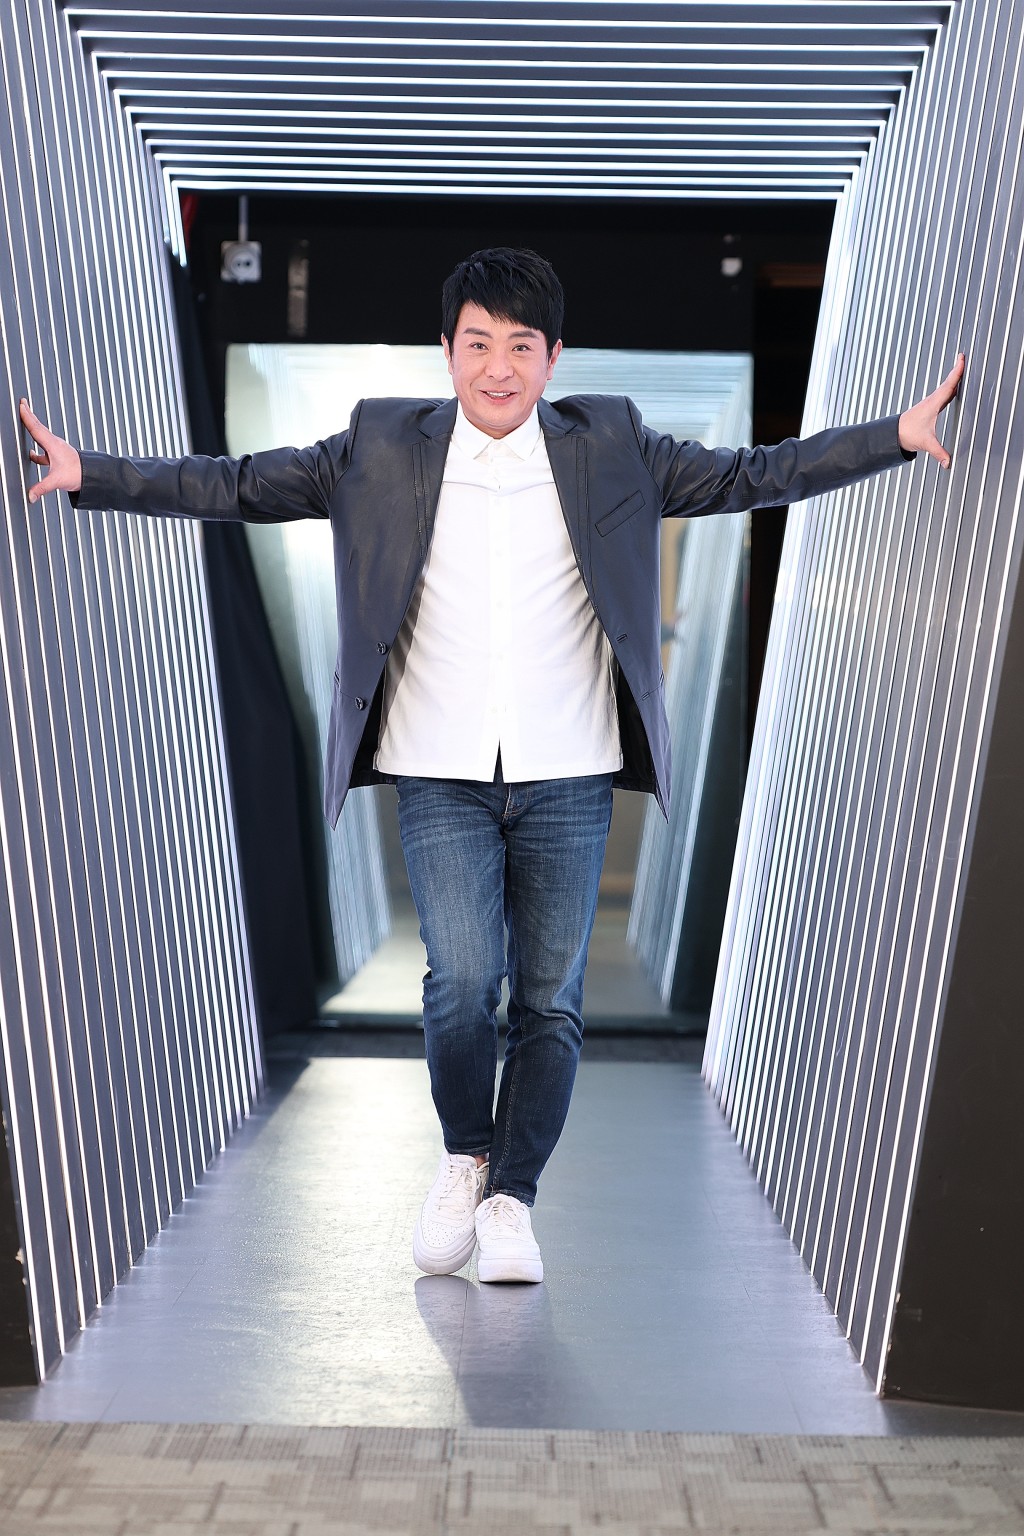 梁思浩将为TVB主持灵异版《东张西望》的直播节目。